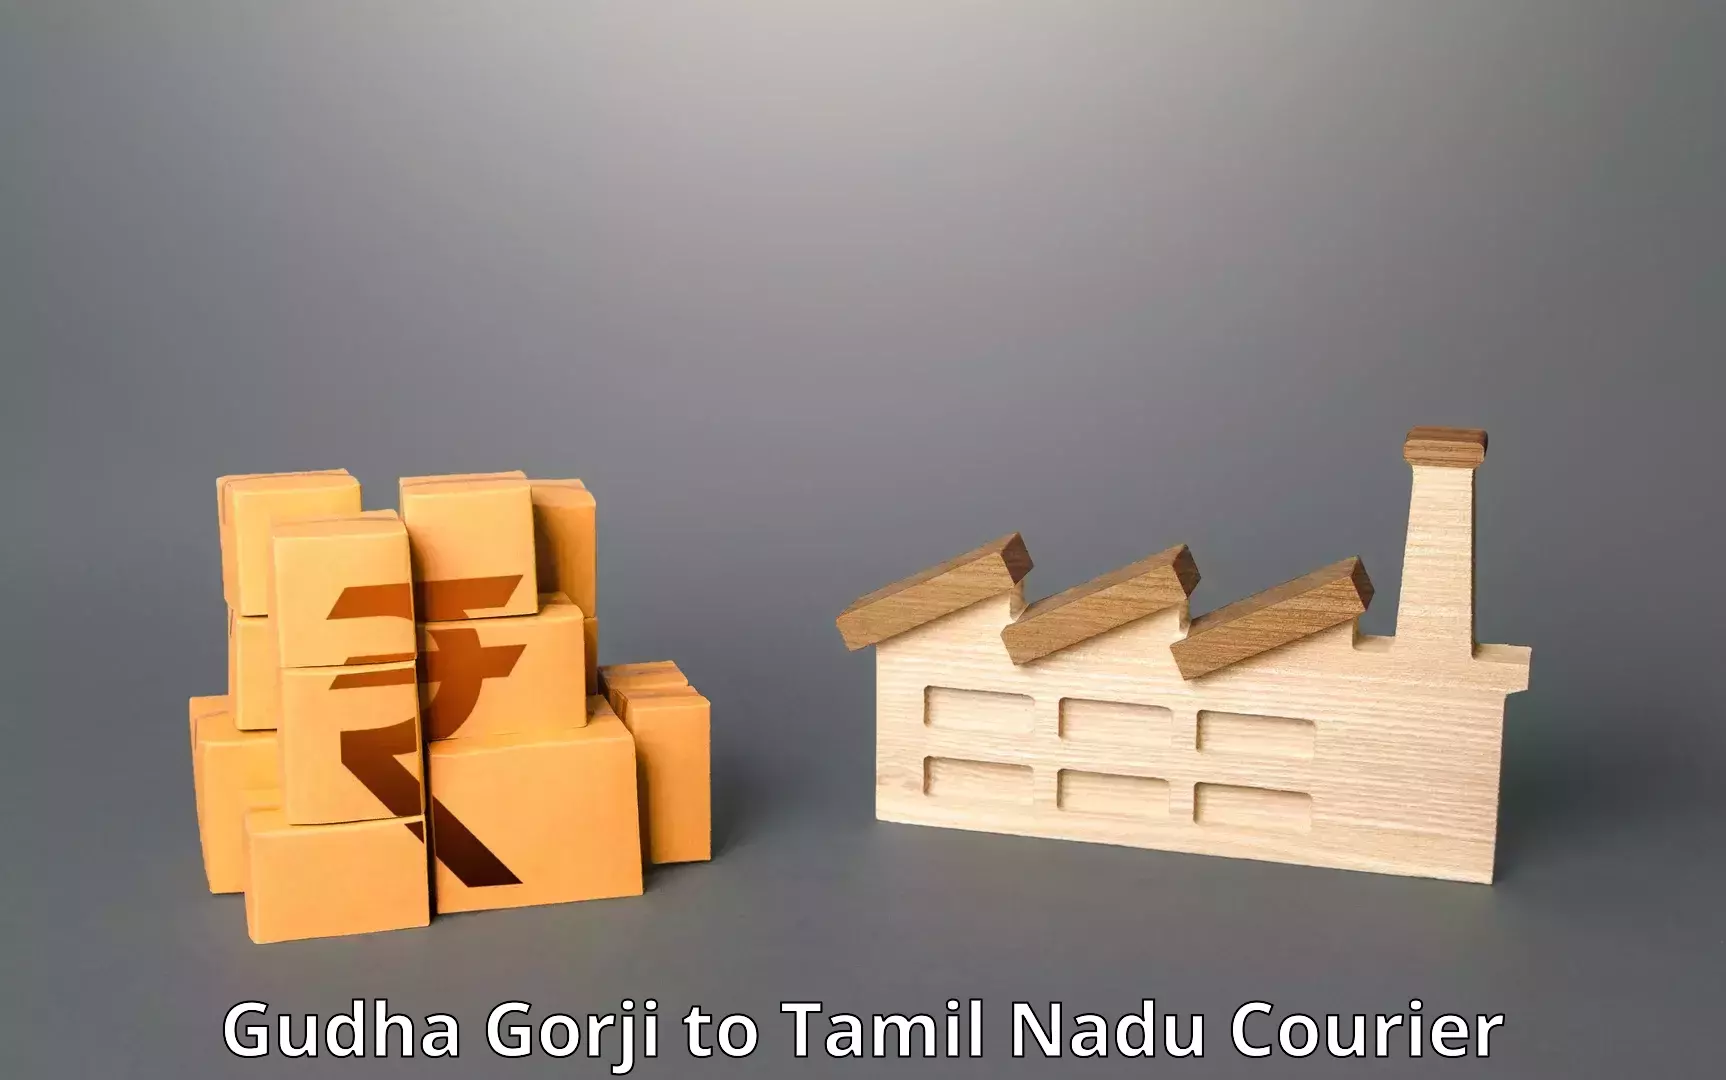 Courier service comparison Gudha Gorji to Karambakkudi